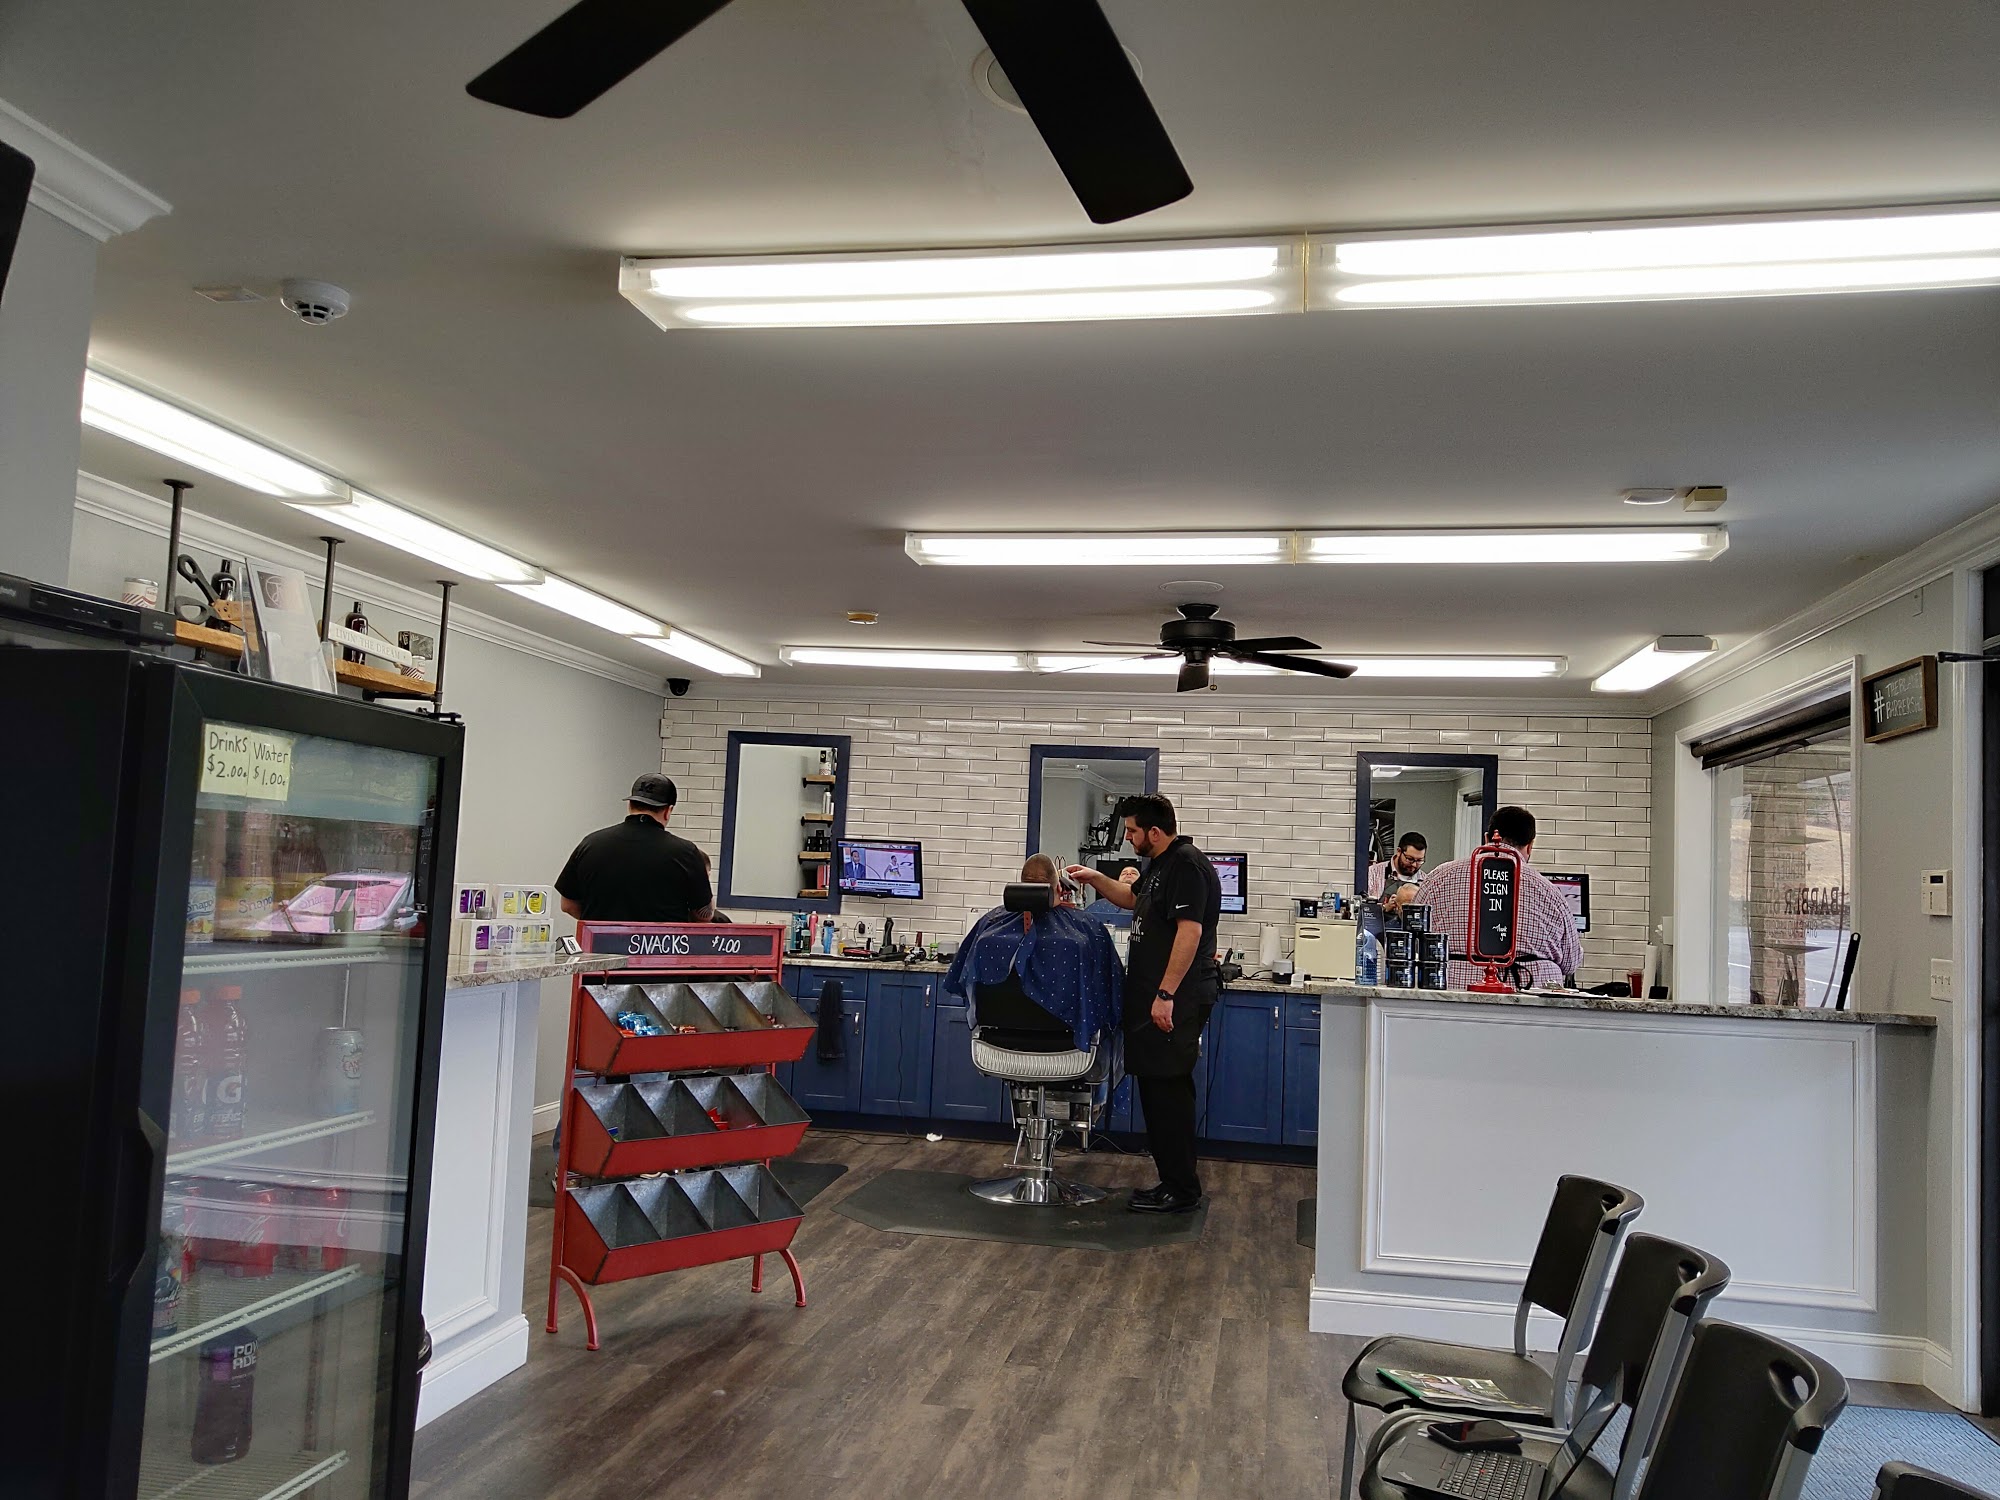 Bladez Barber Shop